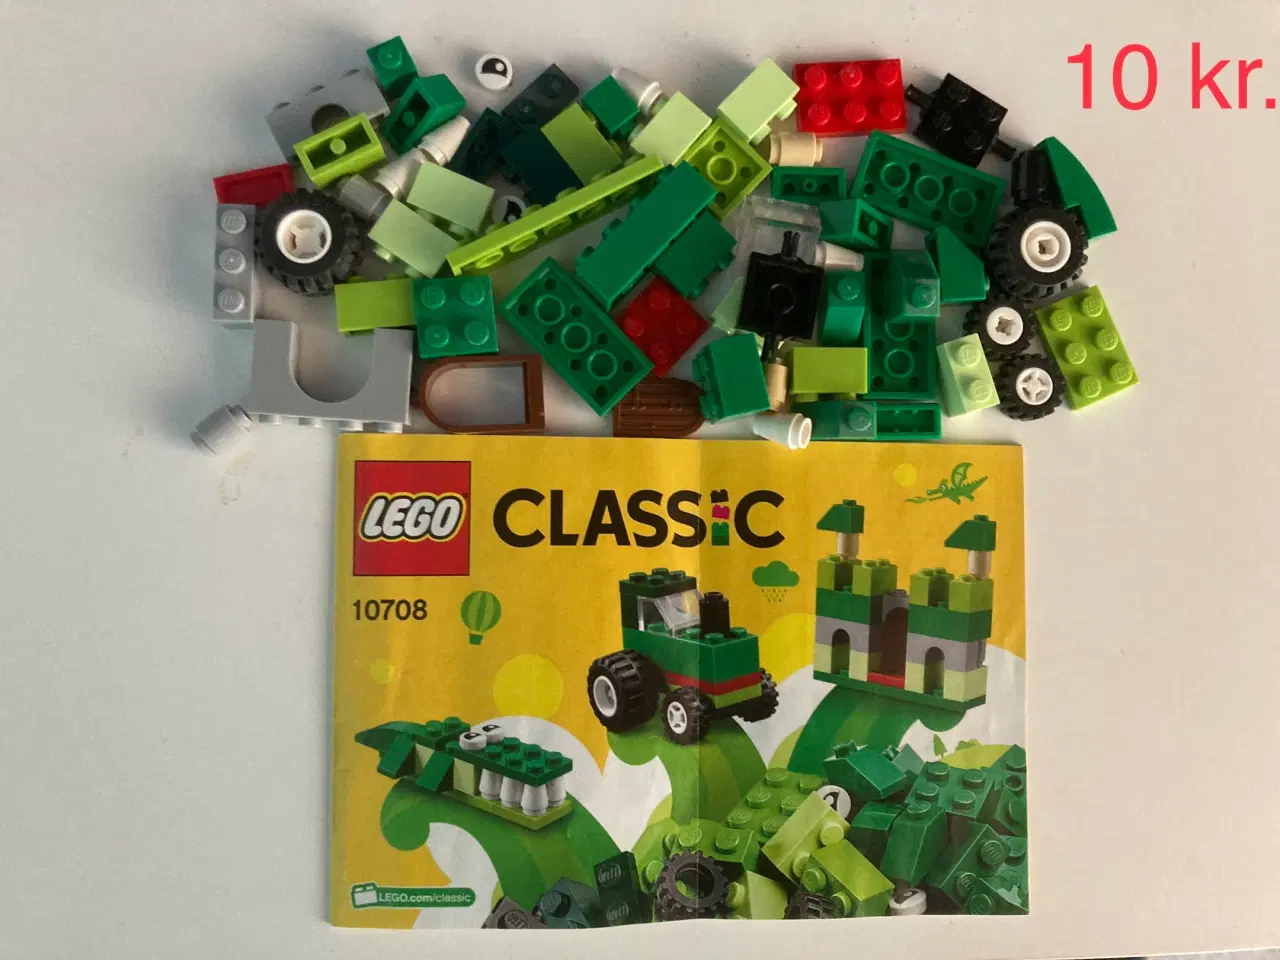 Billede 3 - Legosæt sælges (priserne er fra 5 kr. til 200 kr.)